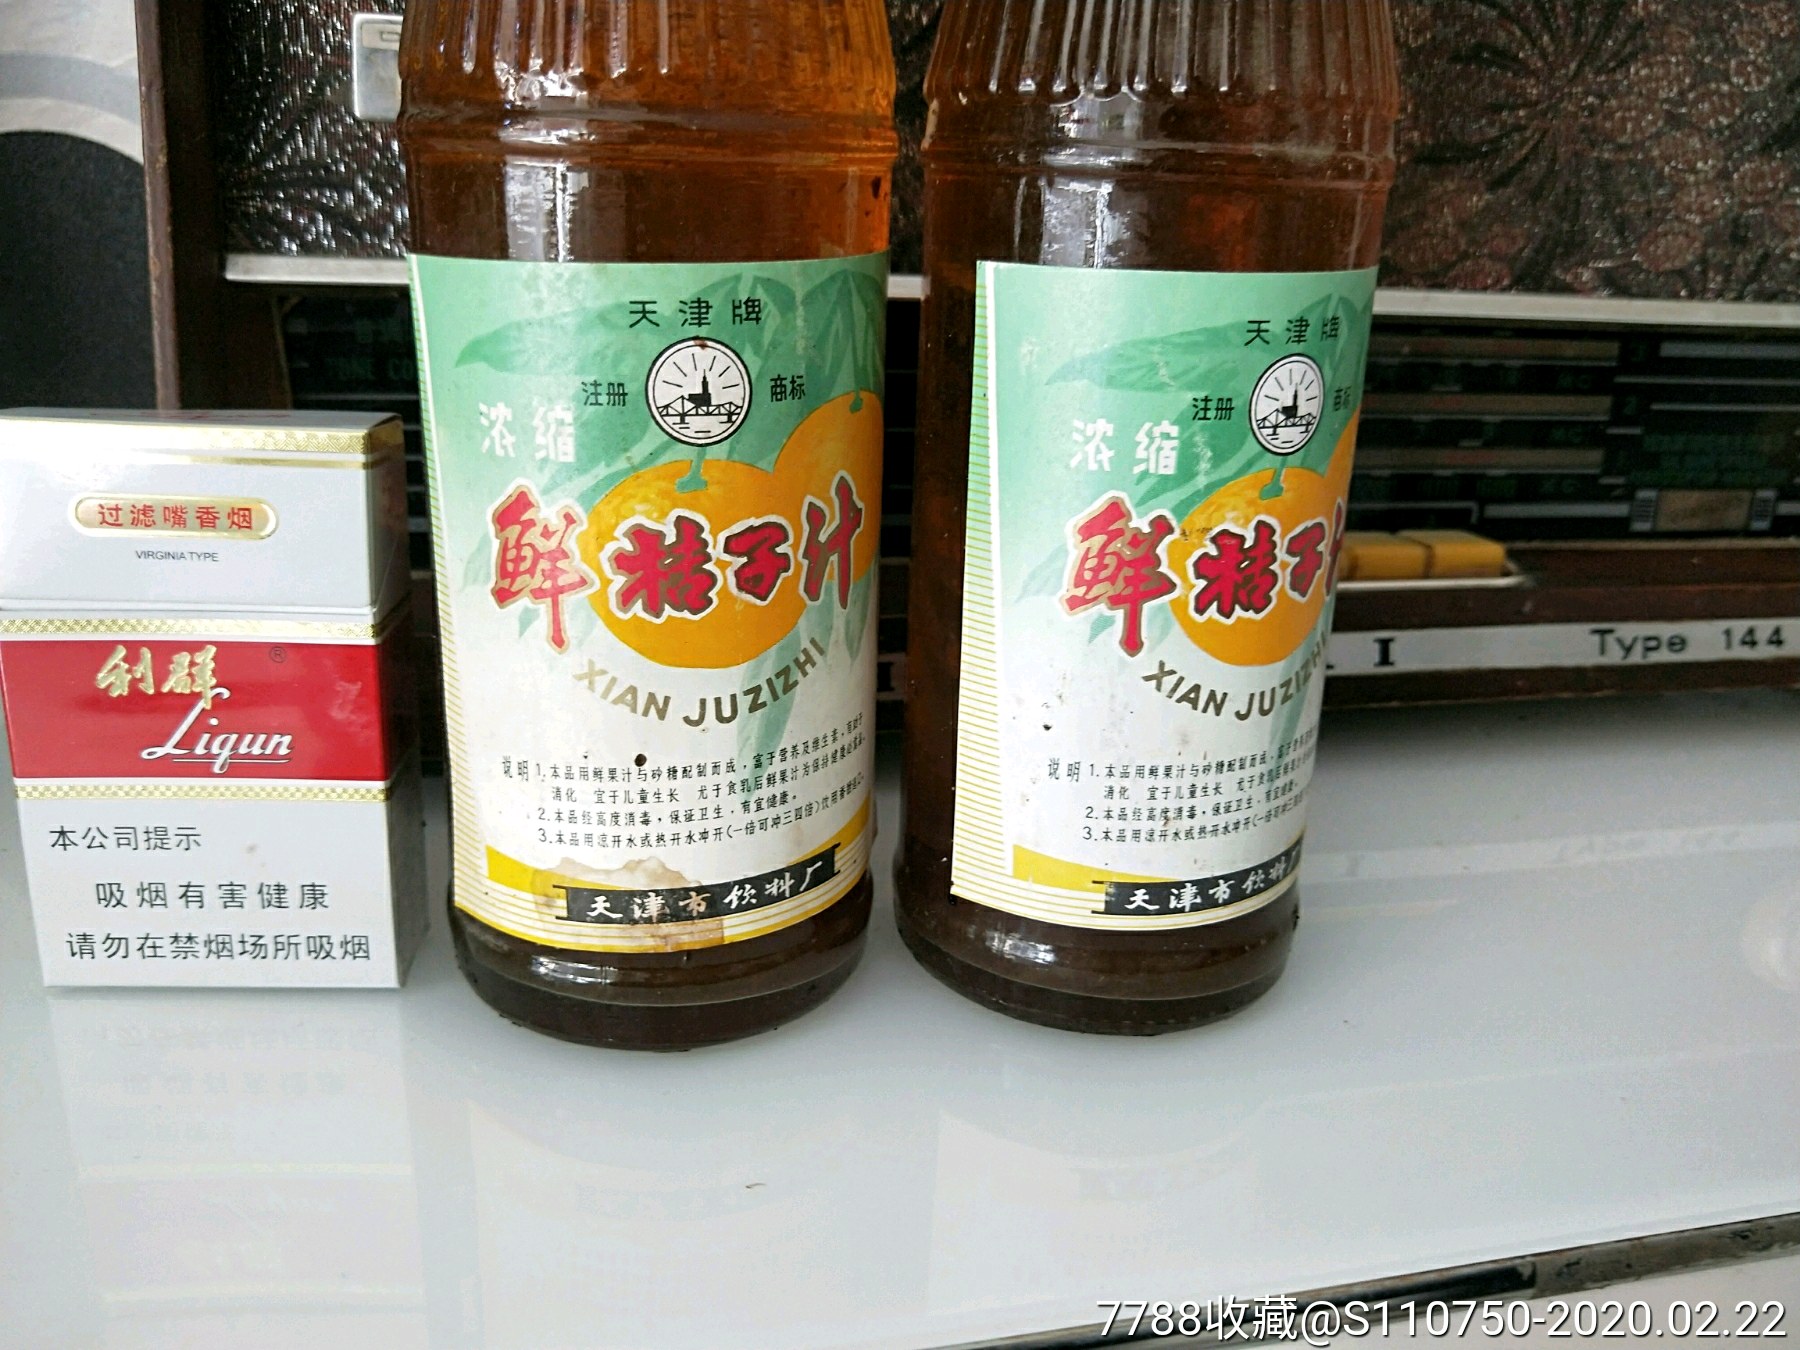 1983,天津市,鲜桔子汁,2瓶